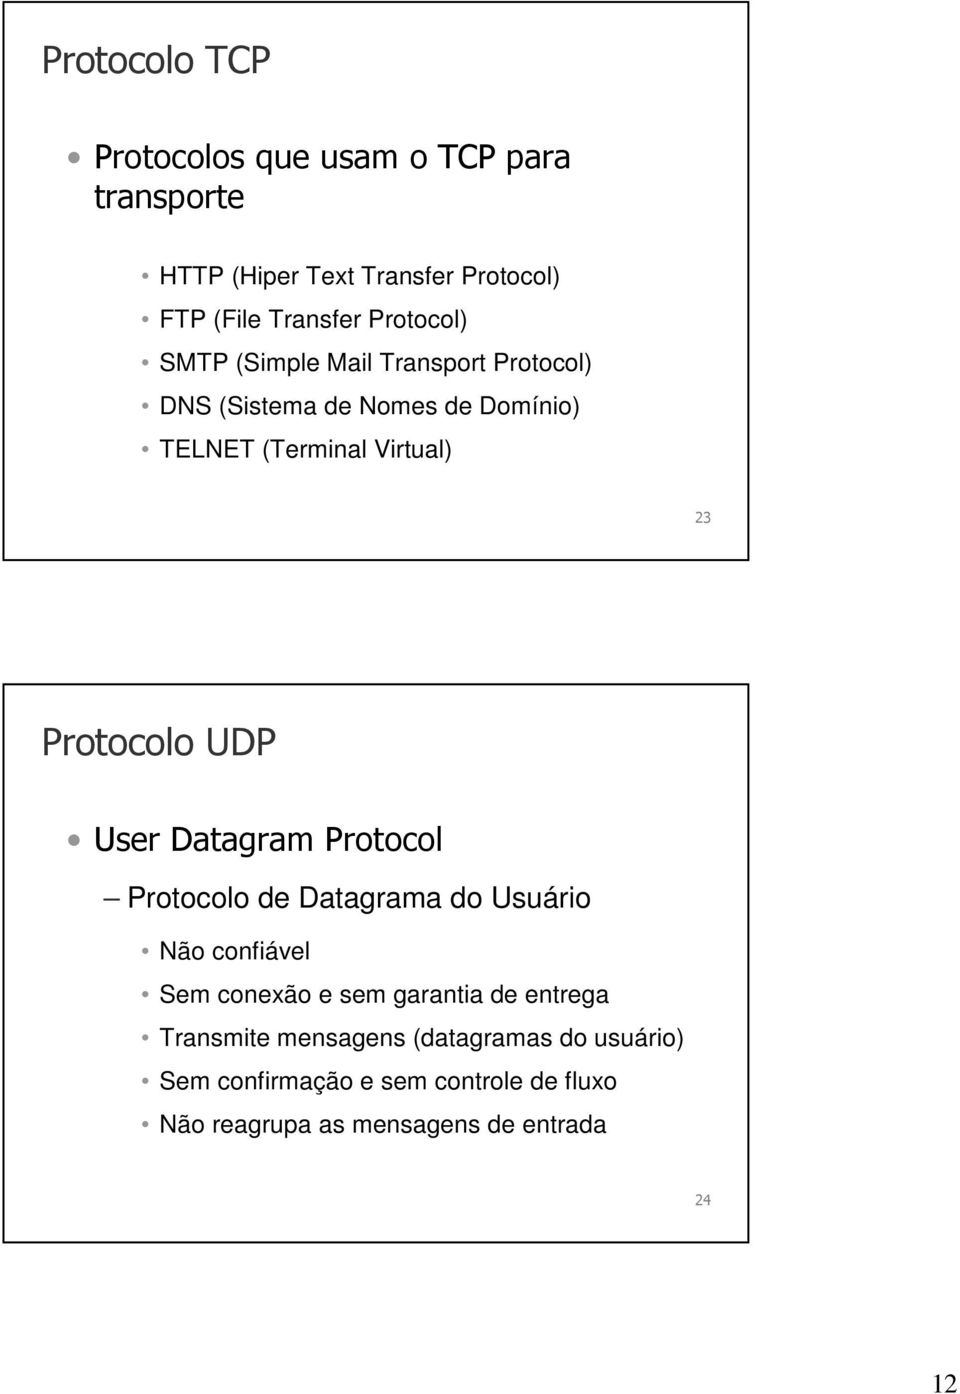 Protocolo UDP User Datagram Protocol Protocolo de Datagrama do Usuário Não confiável Sem conexão e sem garantia de